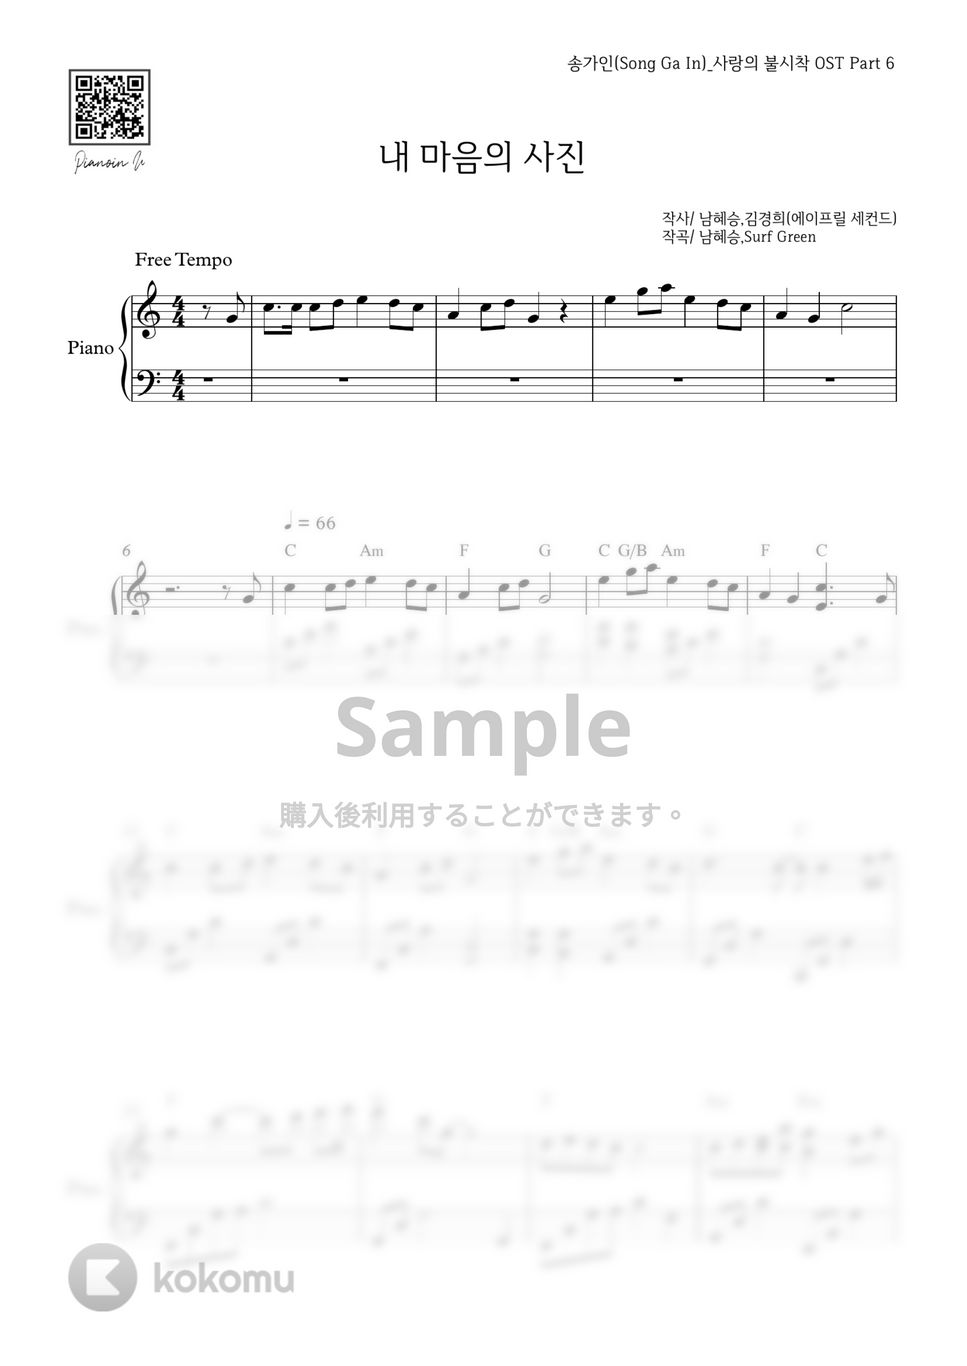 ソン・ガイン(愛の不時着 OST) - 心の写真 by PIANOiNU